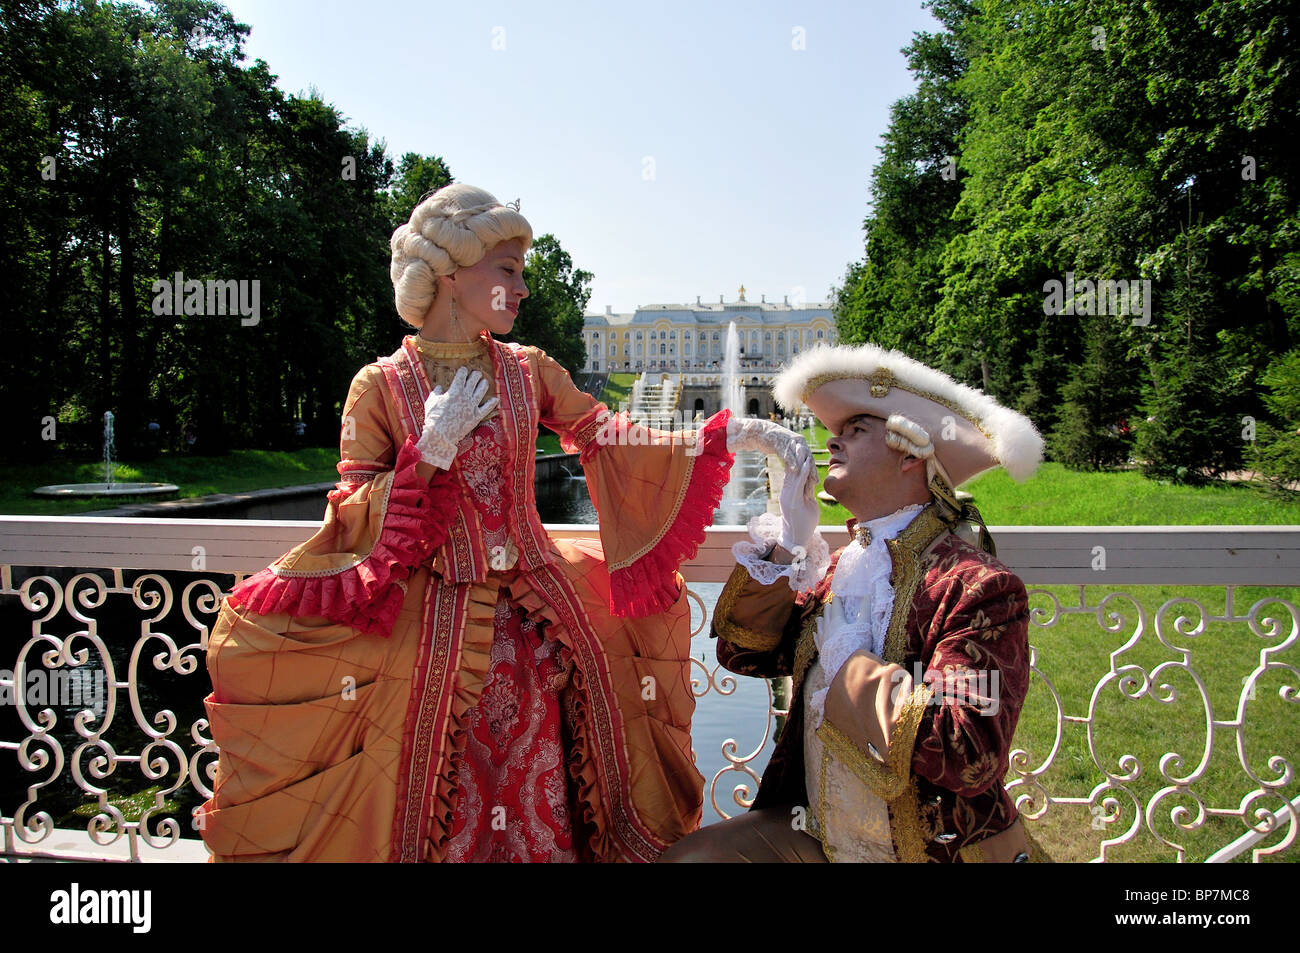 Pareja con trajes de época en Lower Garden, el Gran Palacio Peterhof, Peterhof, San Petersburgo, en el noroeste de la región, Rusia Foto de stock